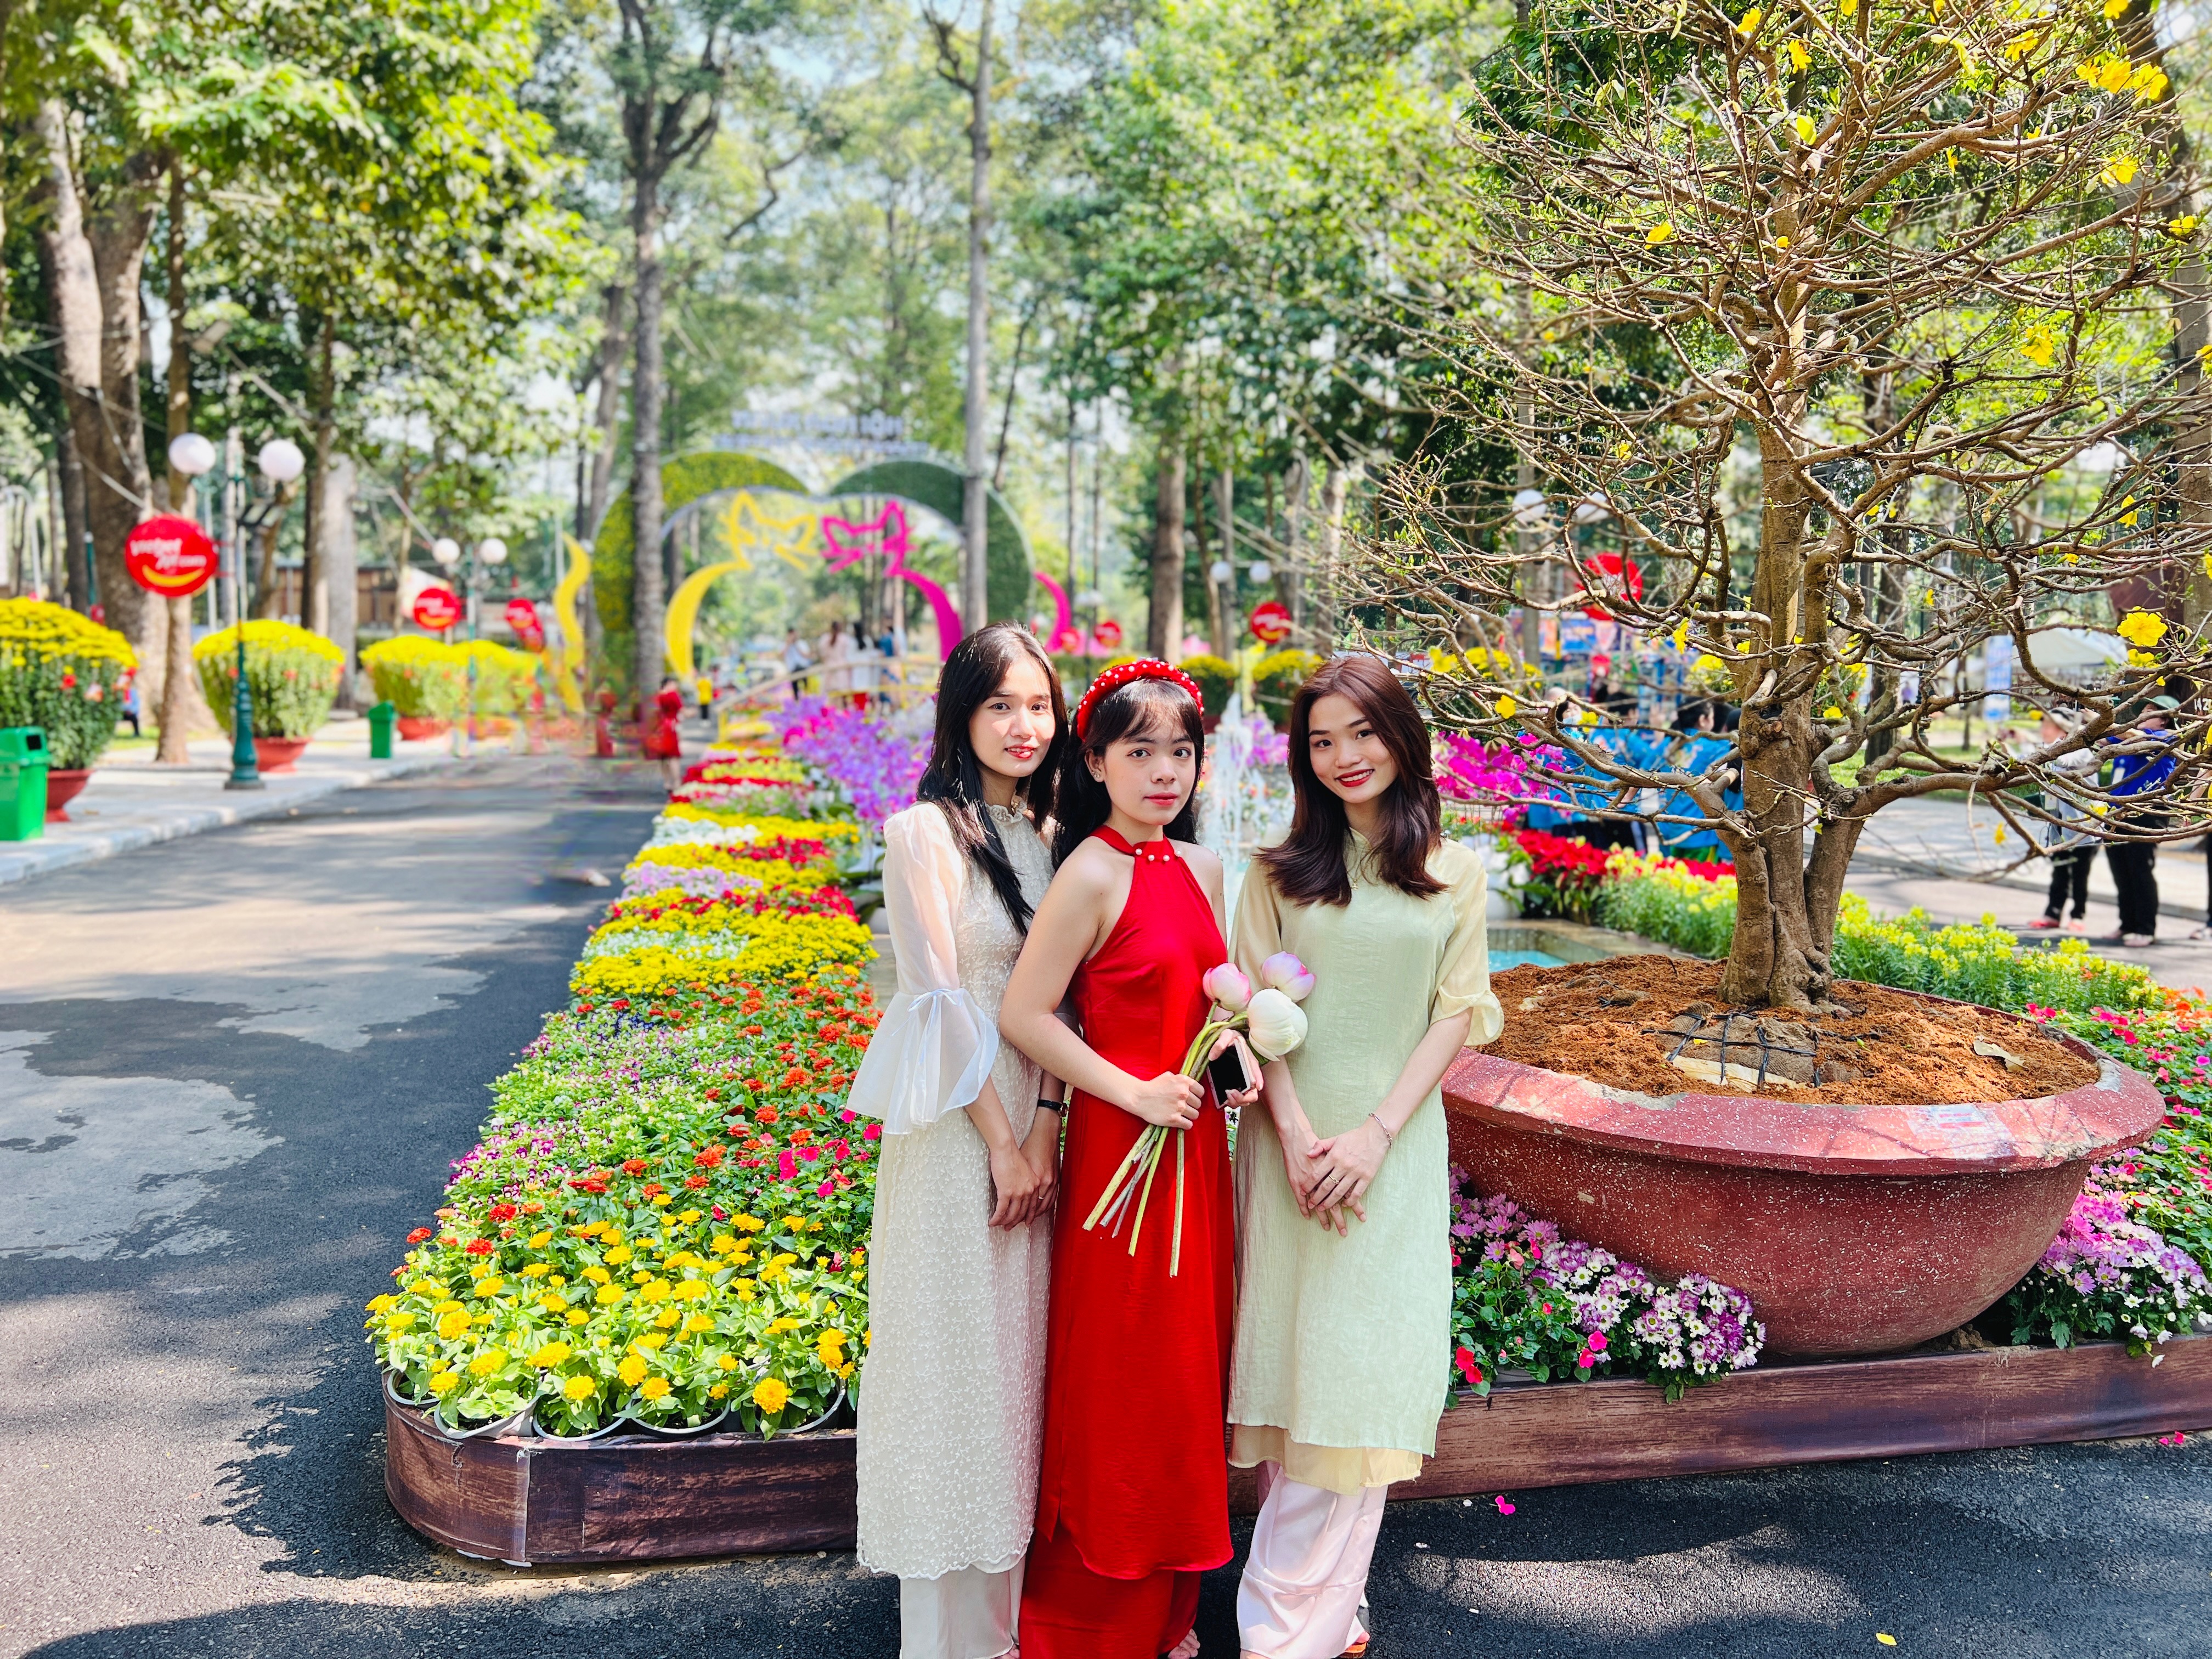 Khai mạc lễ hội hoa Xuân tại vùng trồng hoa lớn nhất miền Bắc  Lễ hội   Vietnam VietnamPlus